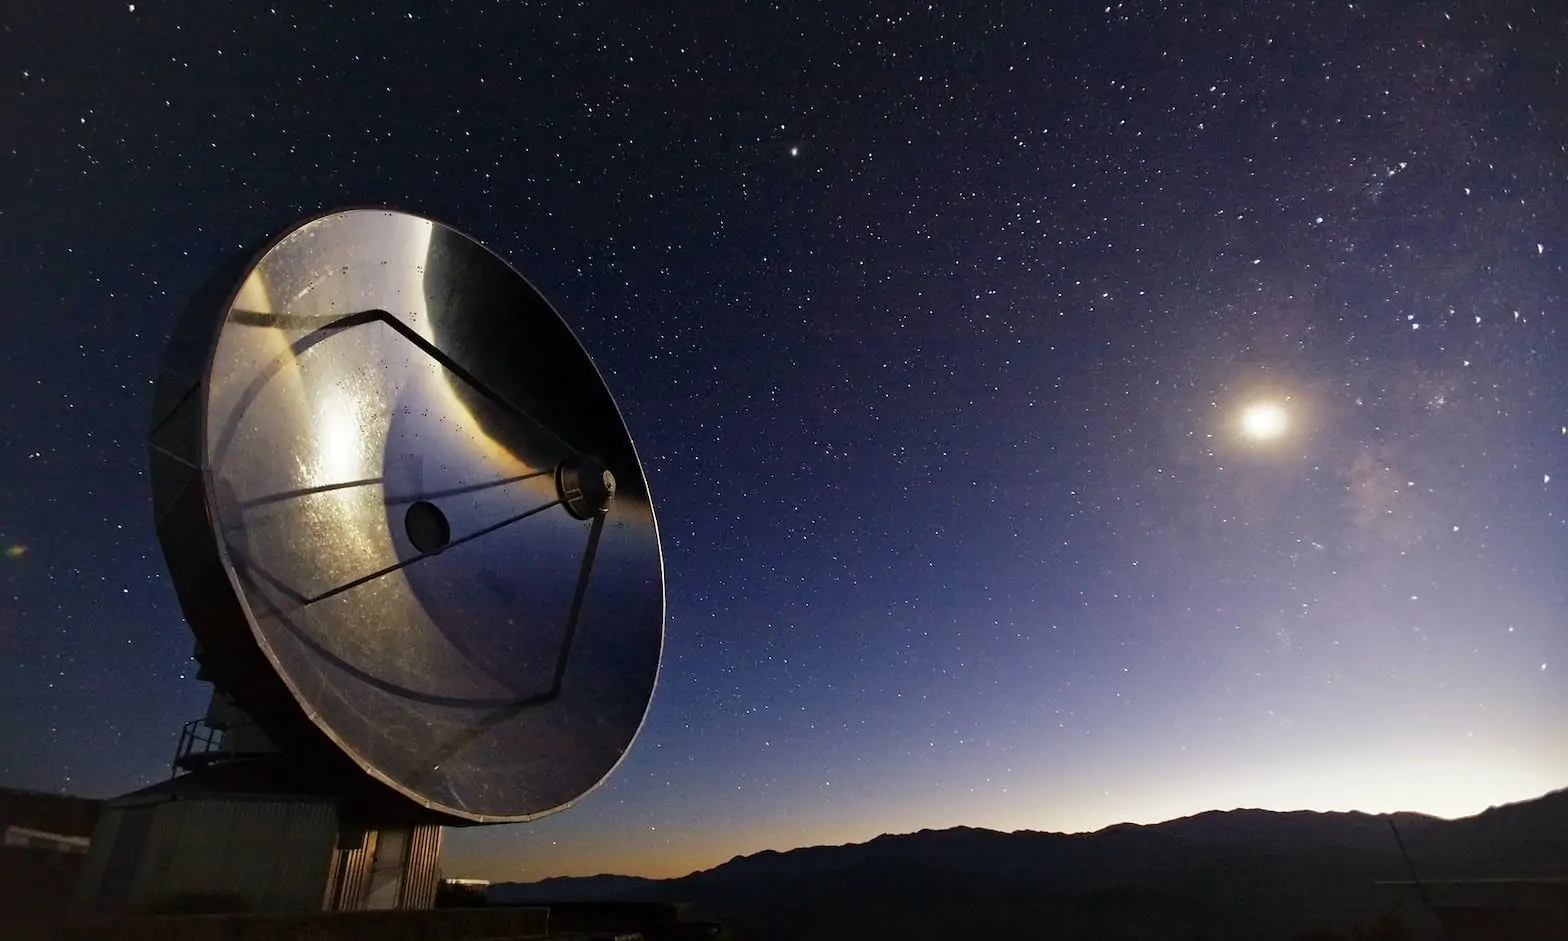 Image du Swedish-ESO 15m Submillimeter Telescope (SEST) à l'Observatoire de La Silla de l'ESO, situé à la périphérie du désert d'Atacama au Chili.